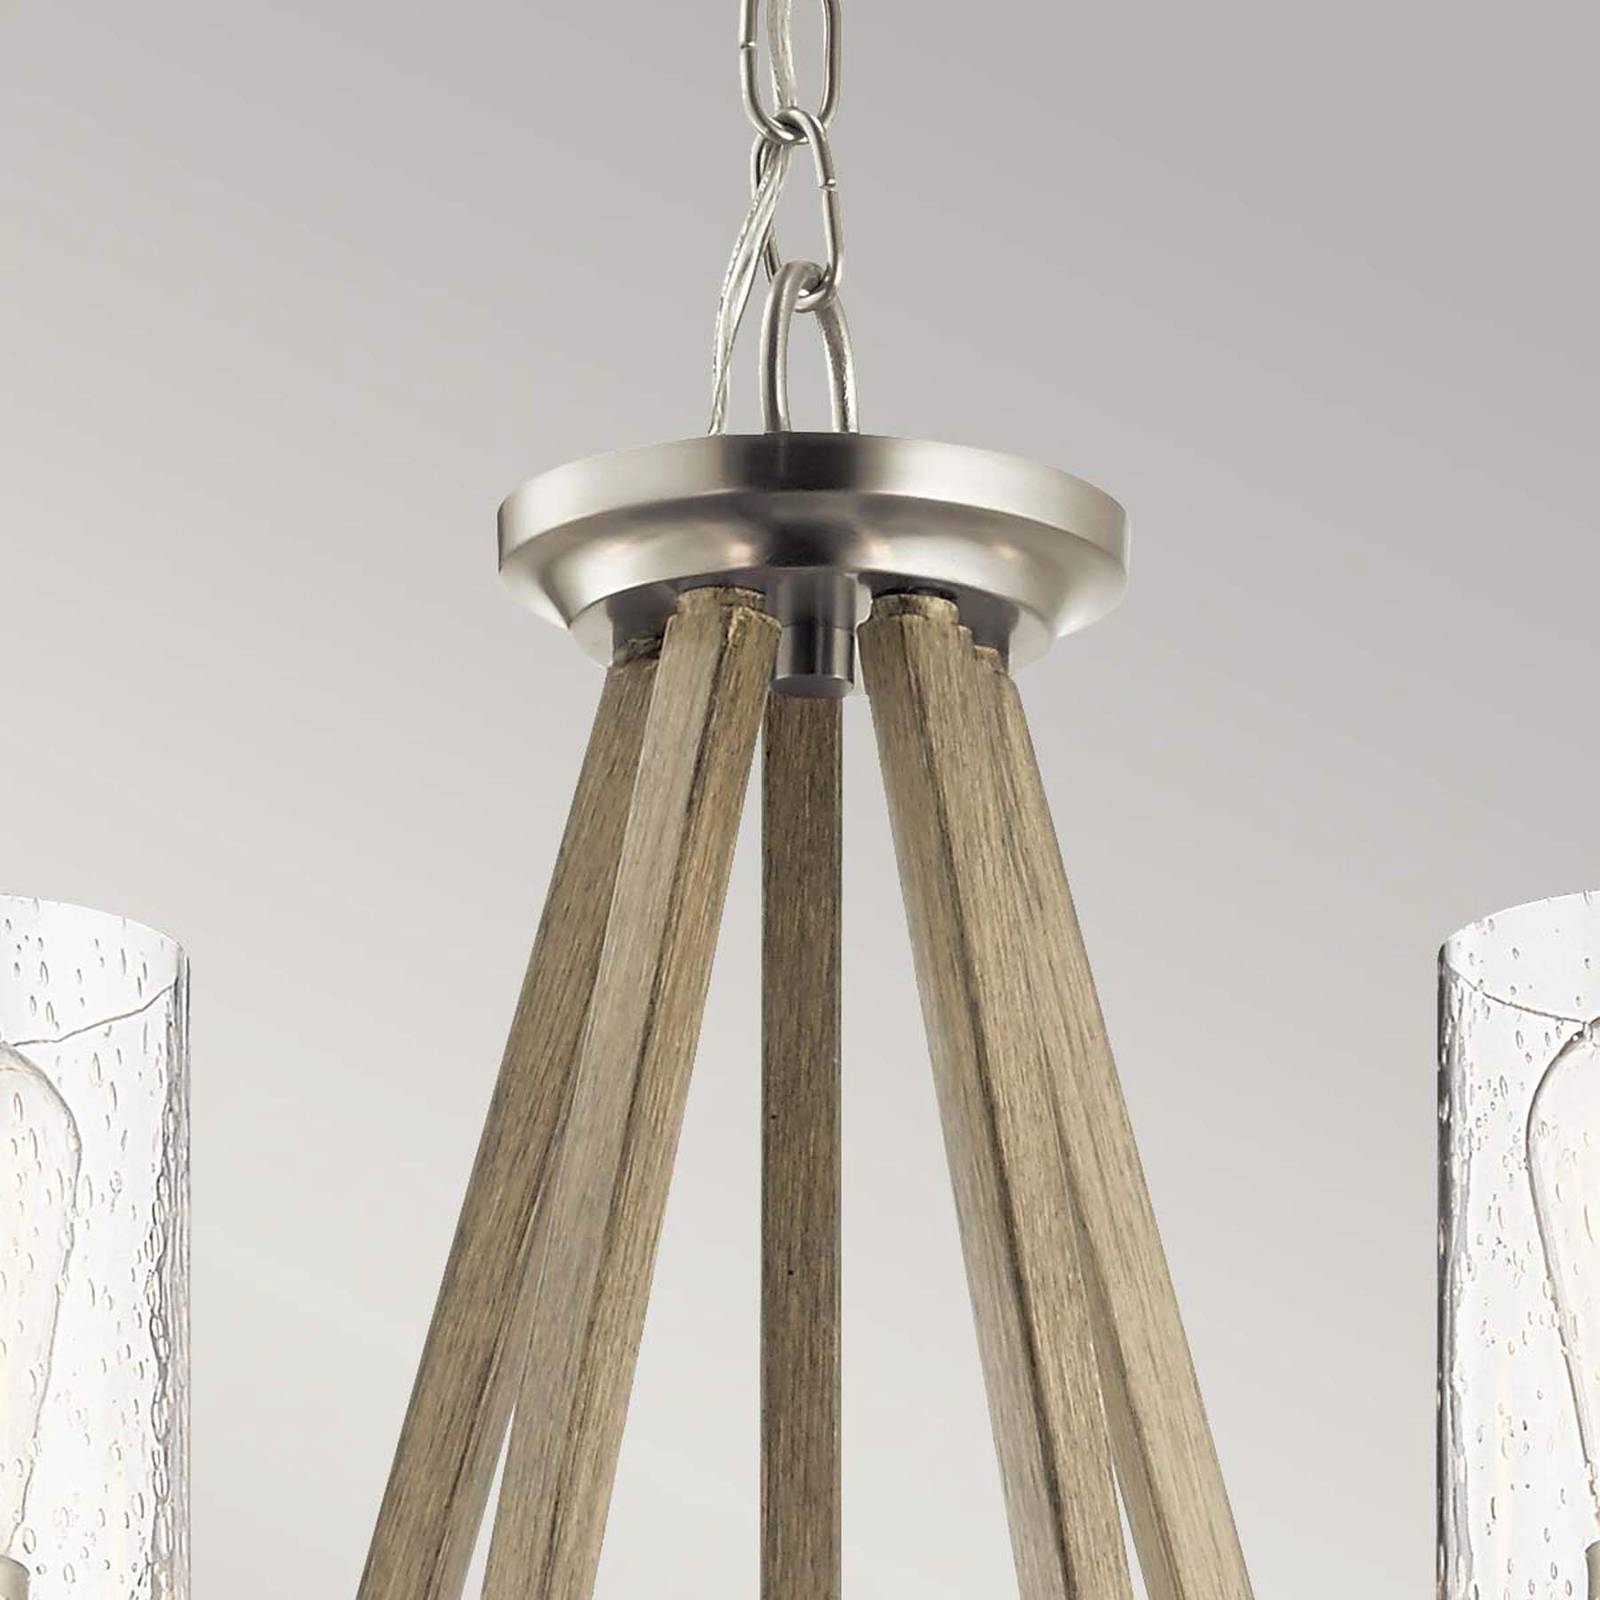 Kichler deryn függőlámpa, 5 lámpás, antik szürke